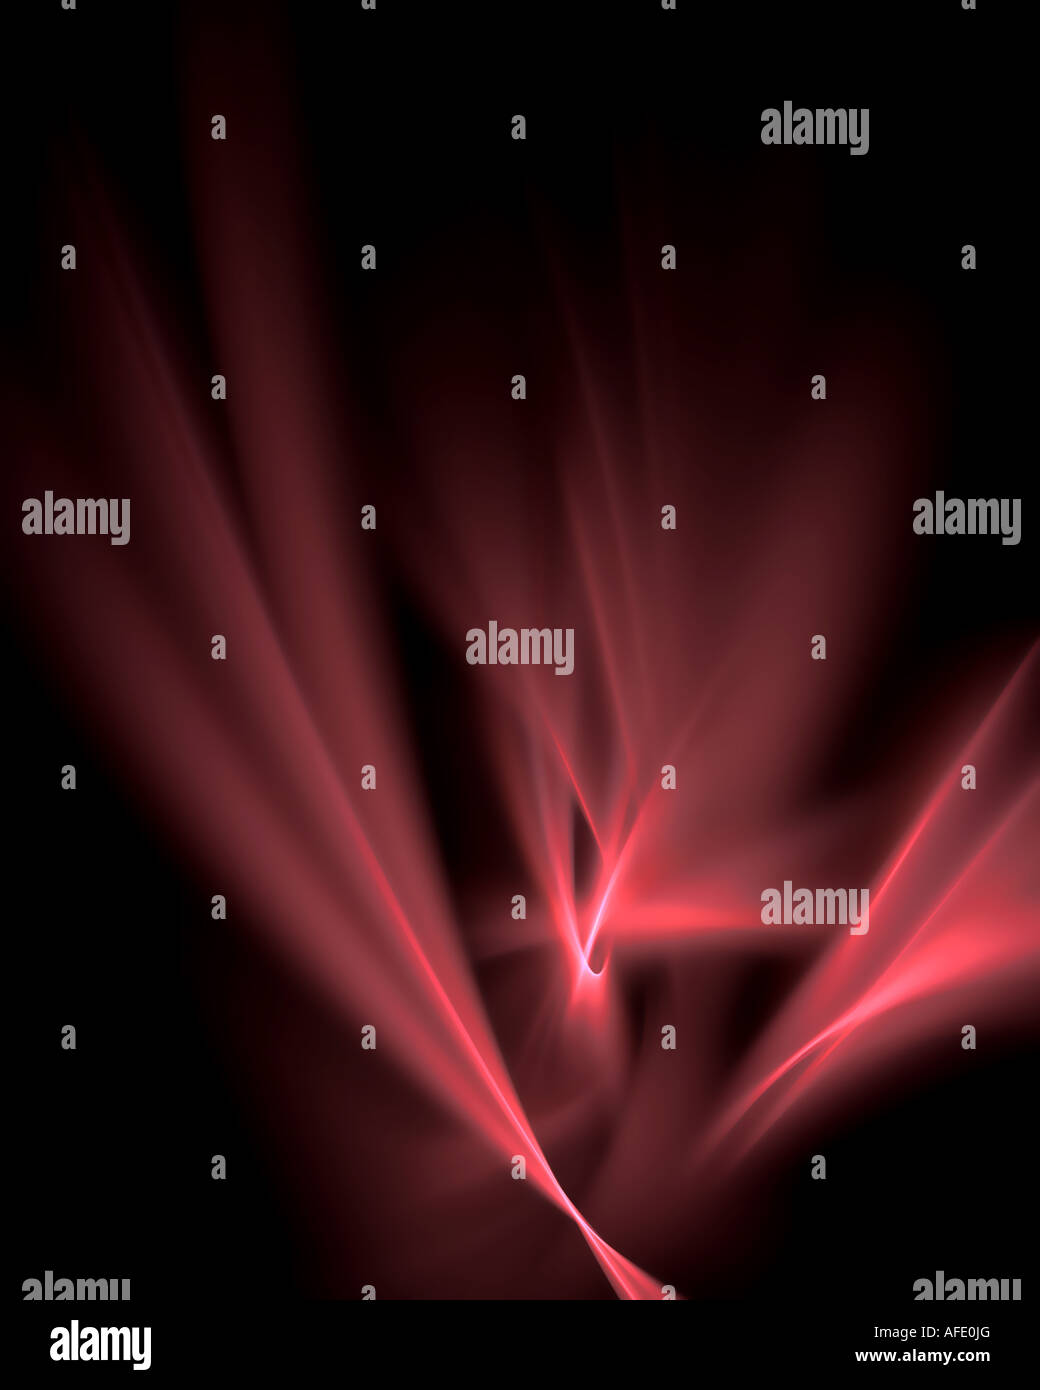 Résumé de l'image fractale de la flamme d'éclairage sur une recherche qui ressemble à la nuit sombre Banque D'Images